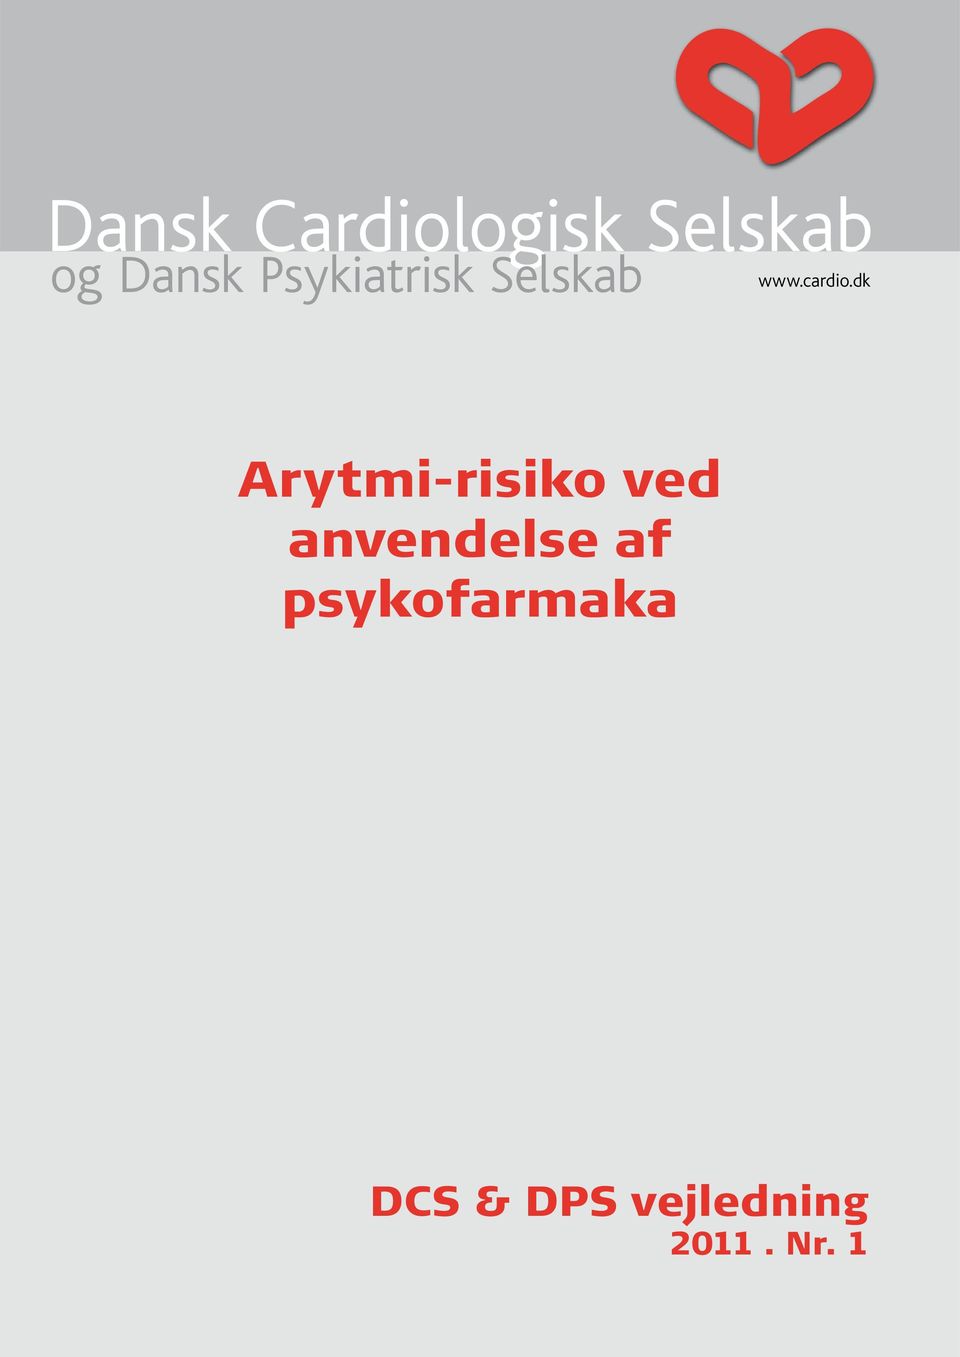 dk og Dansk Psykiatrisk Selskab